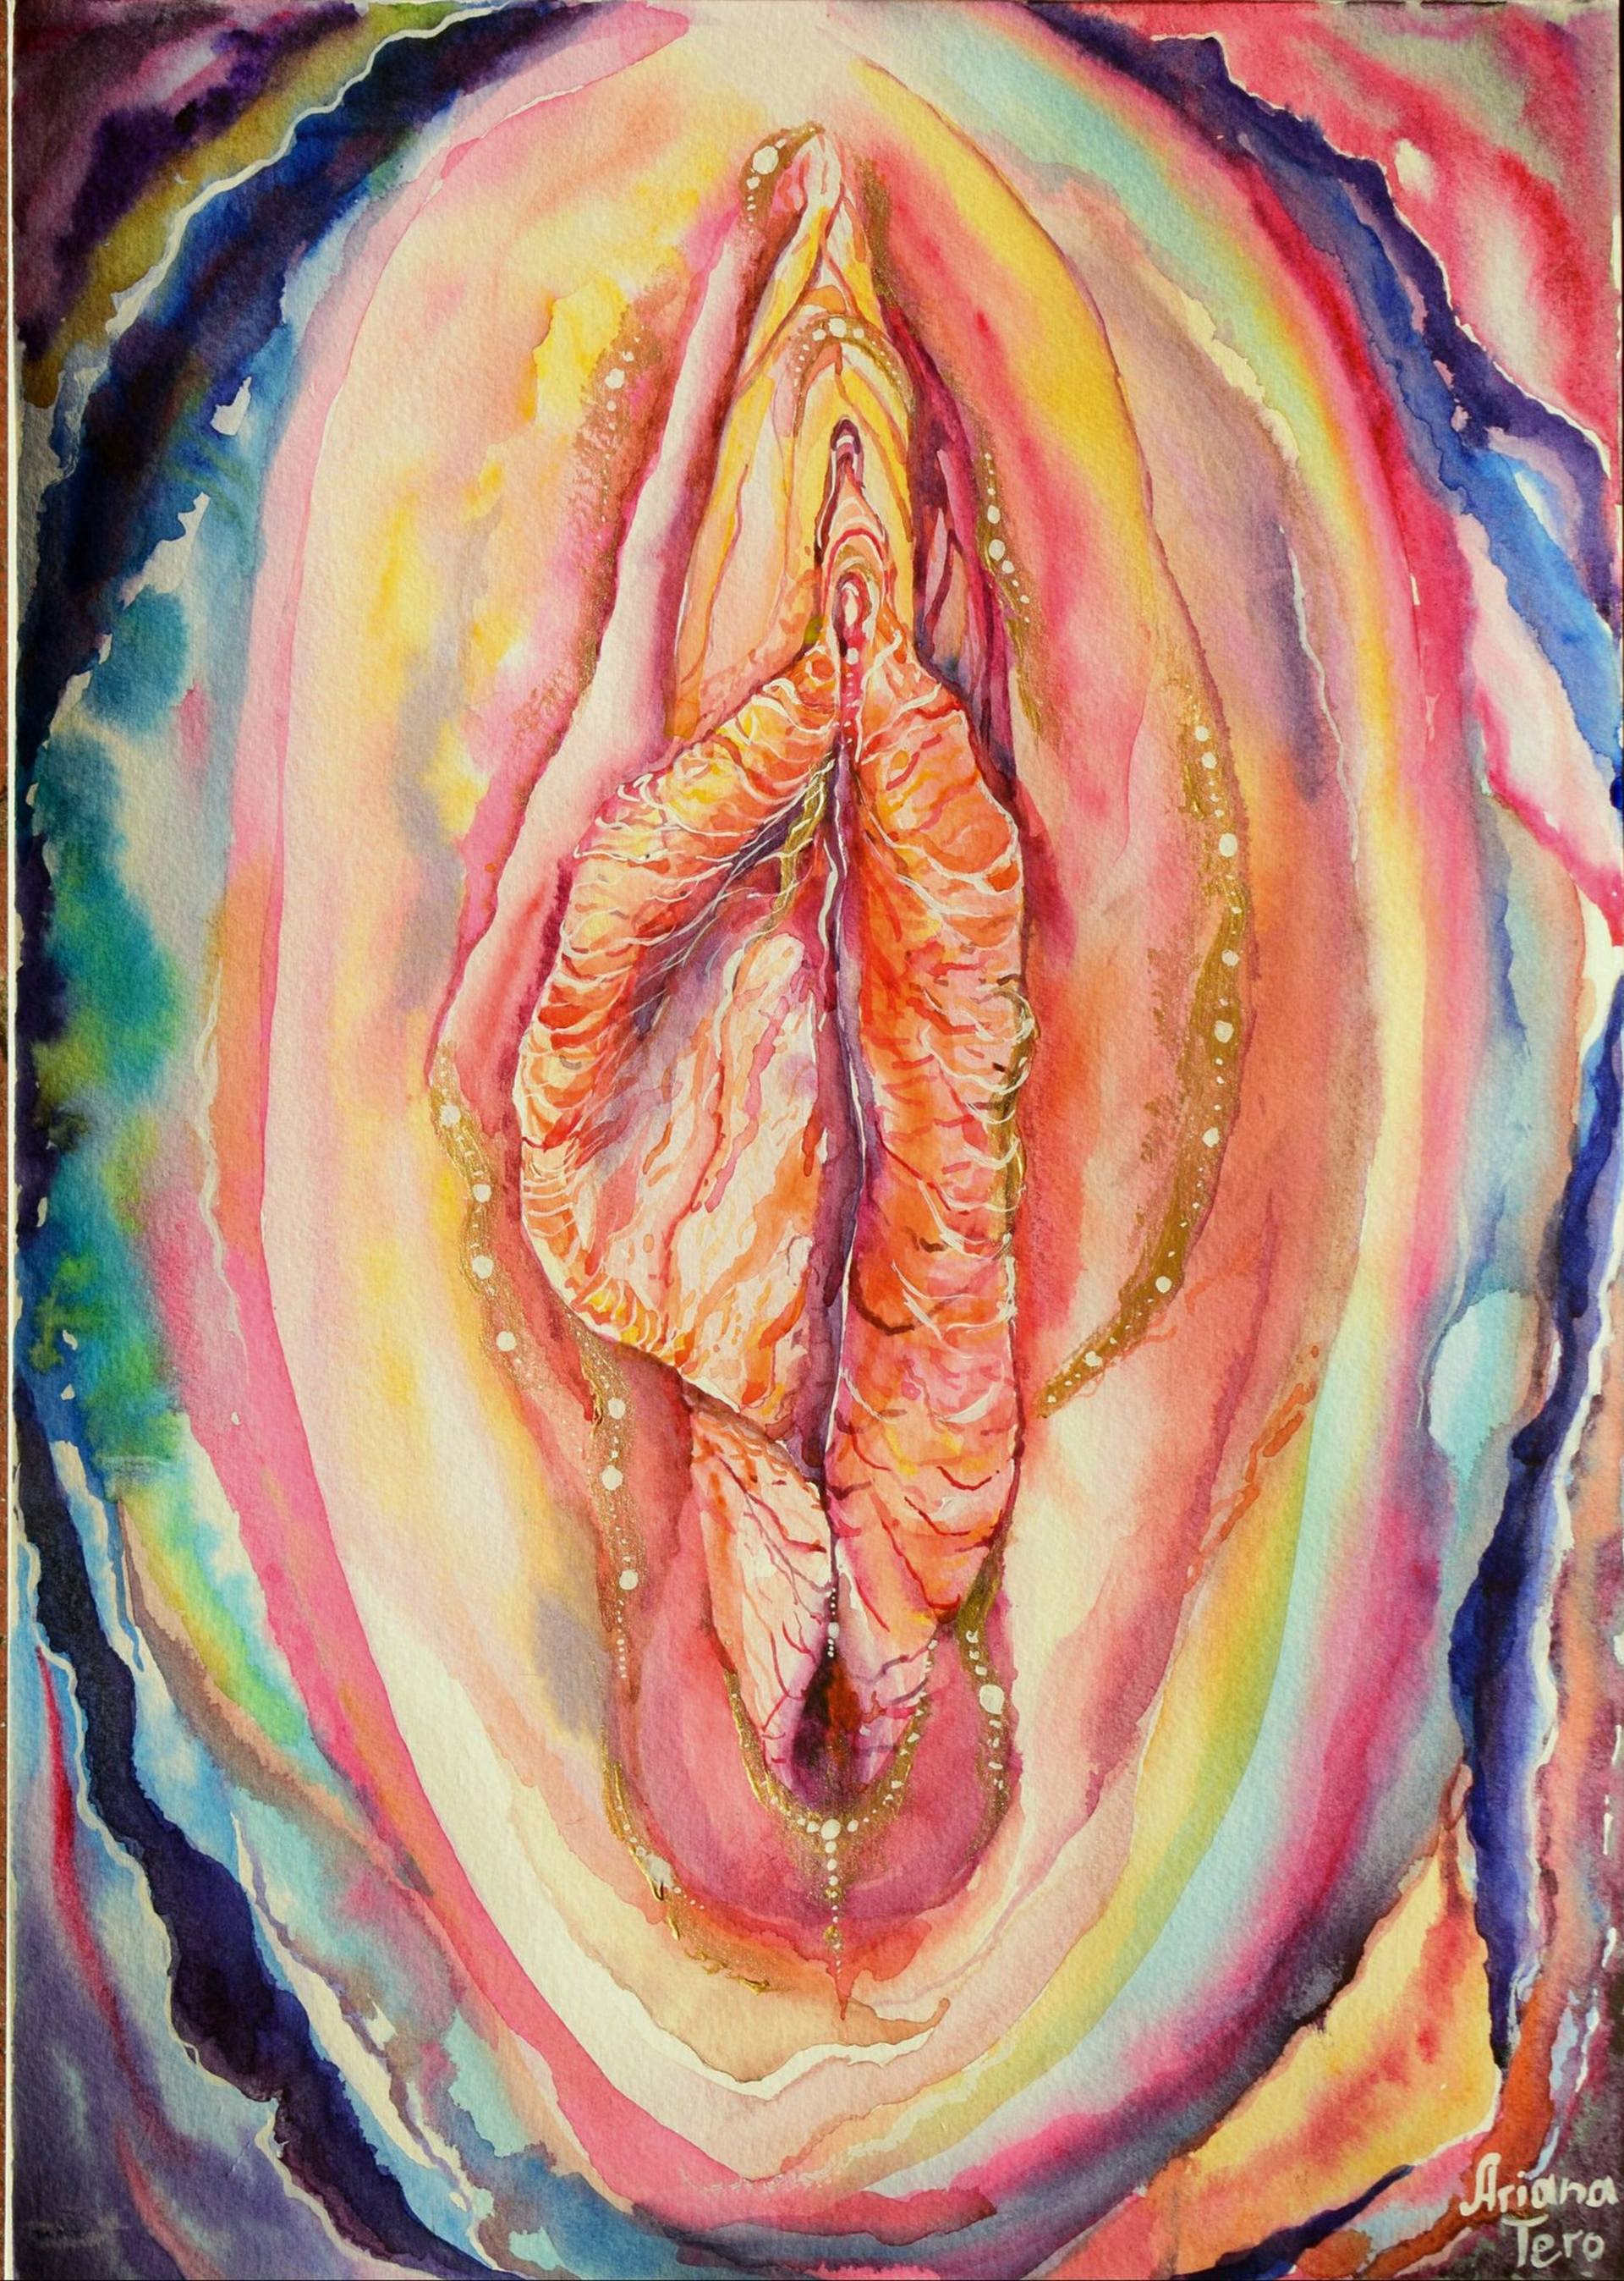 Abstract vagina art